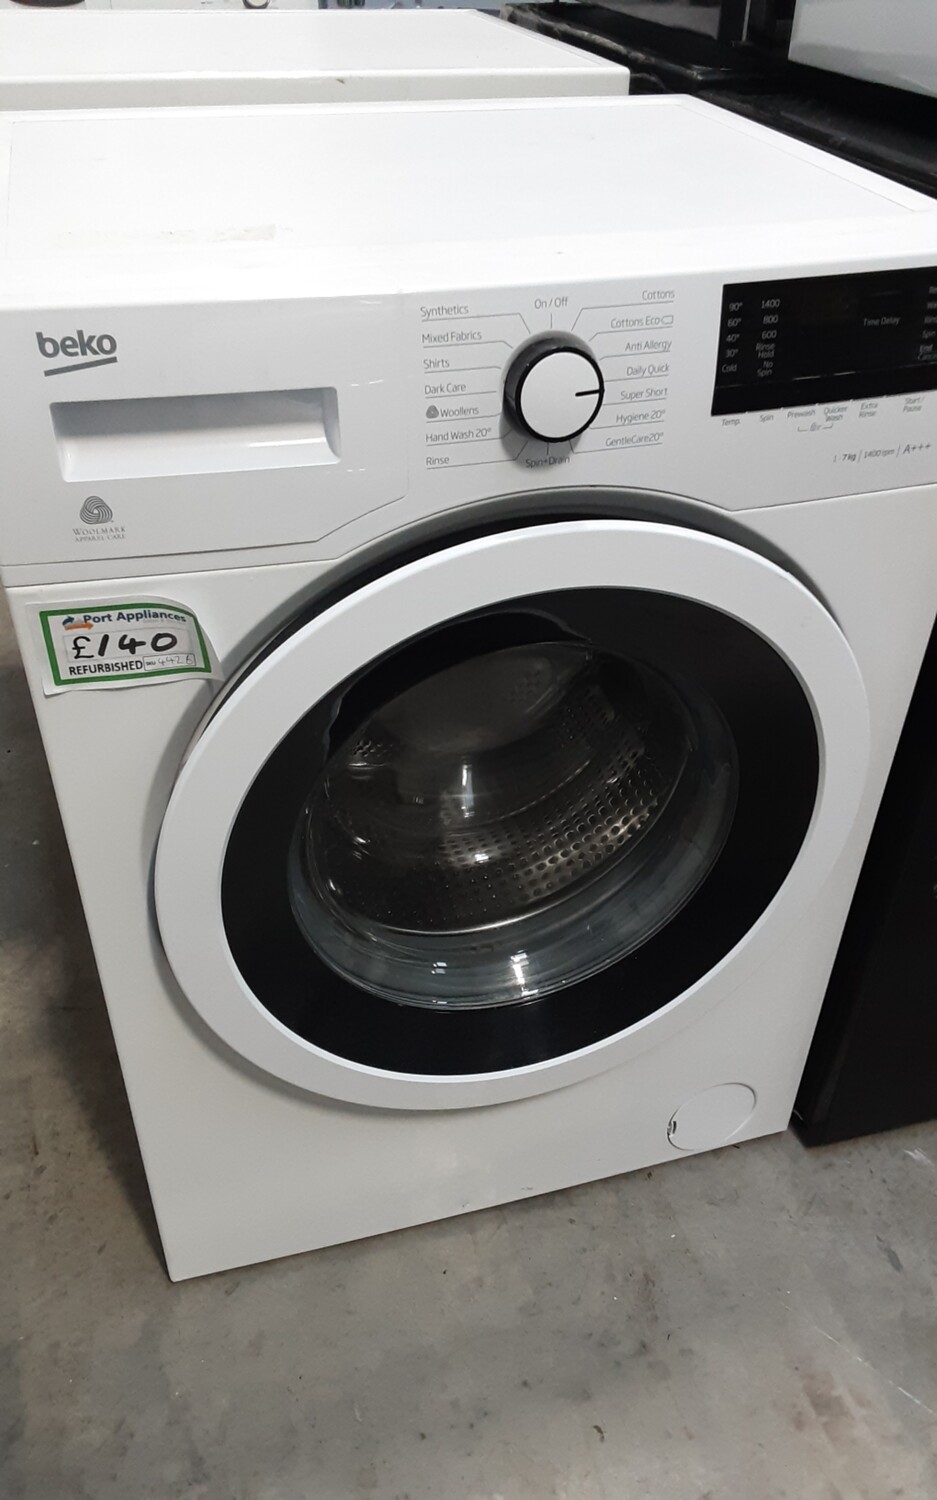 Beko 7kg Load 1400 Spin Washing Machine - White - Refurbished - 6 Month Guarantee